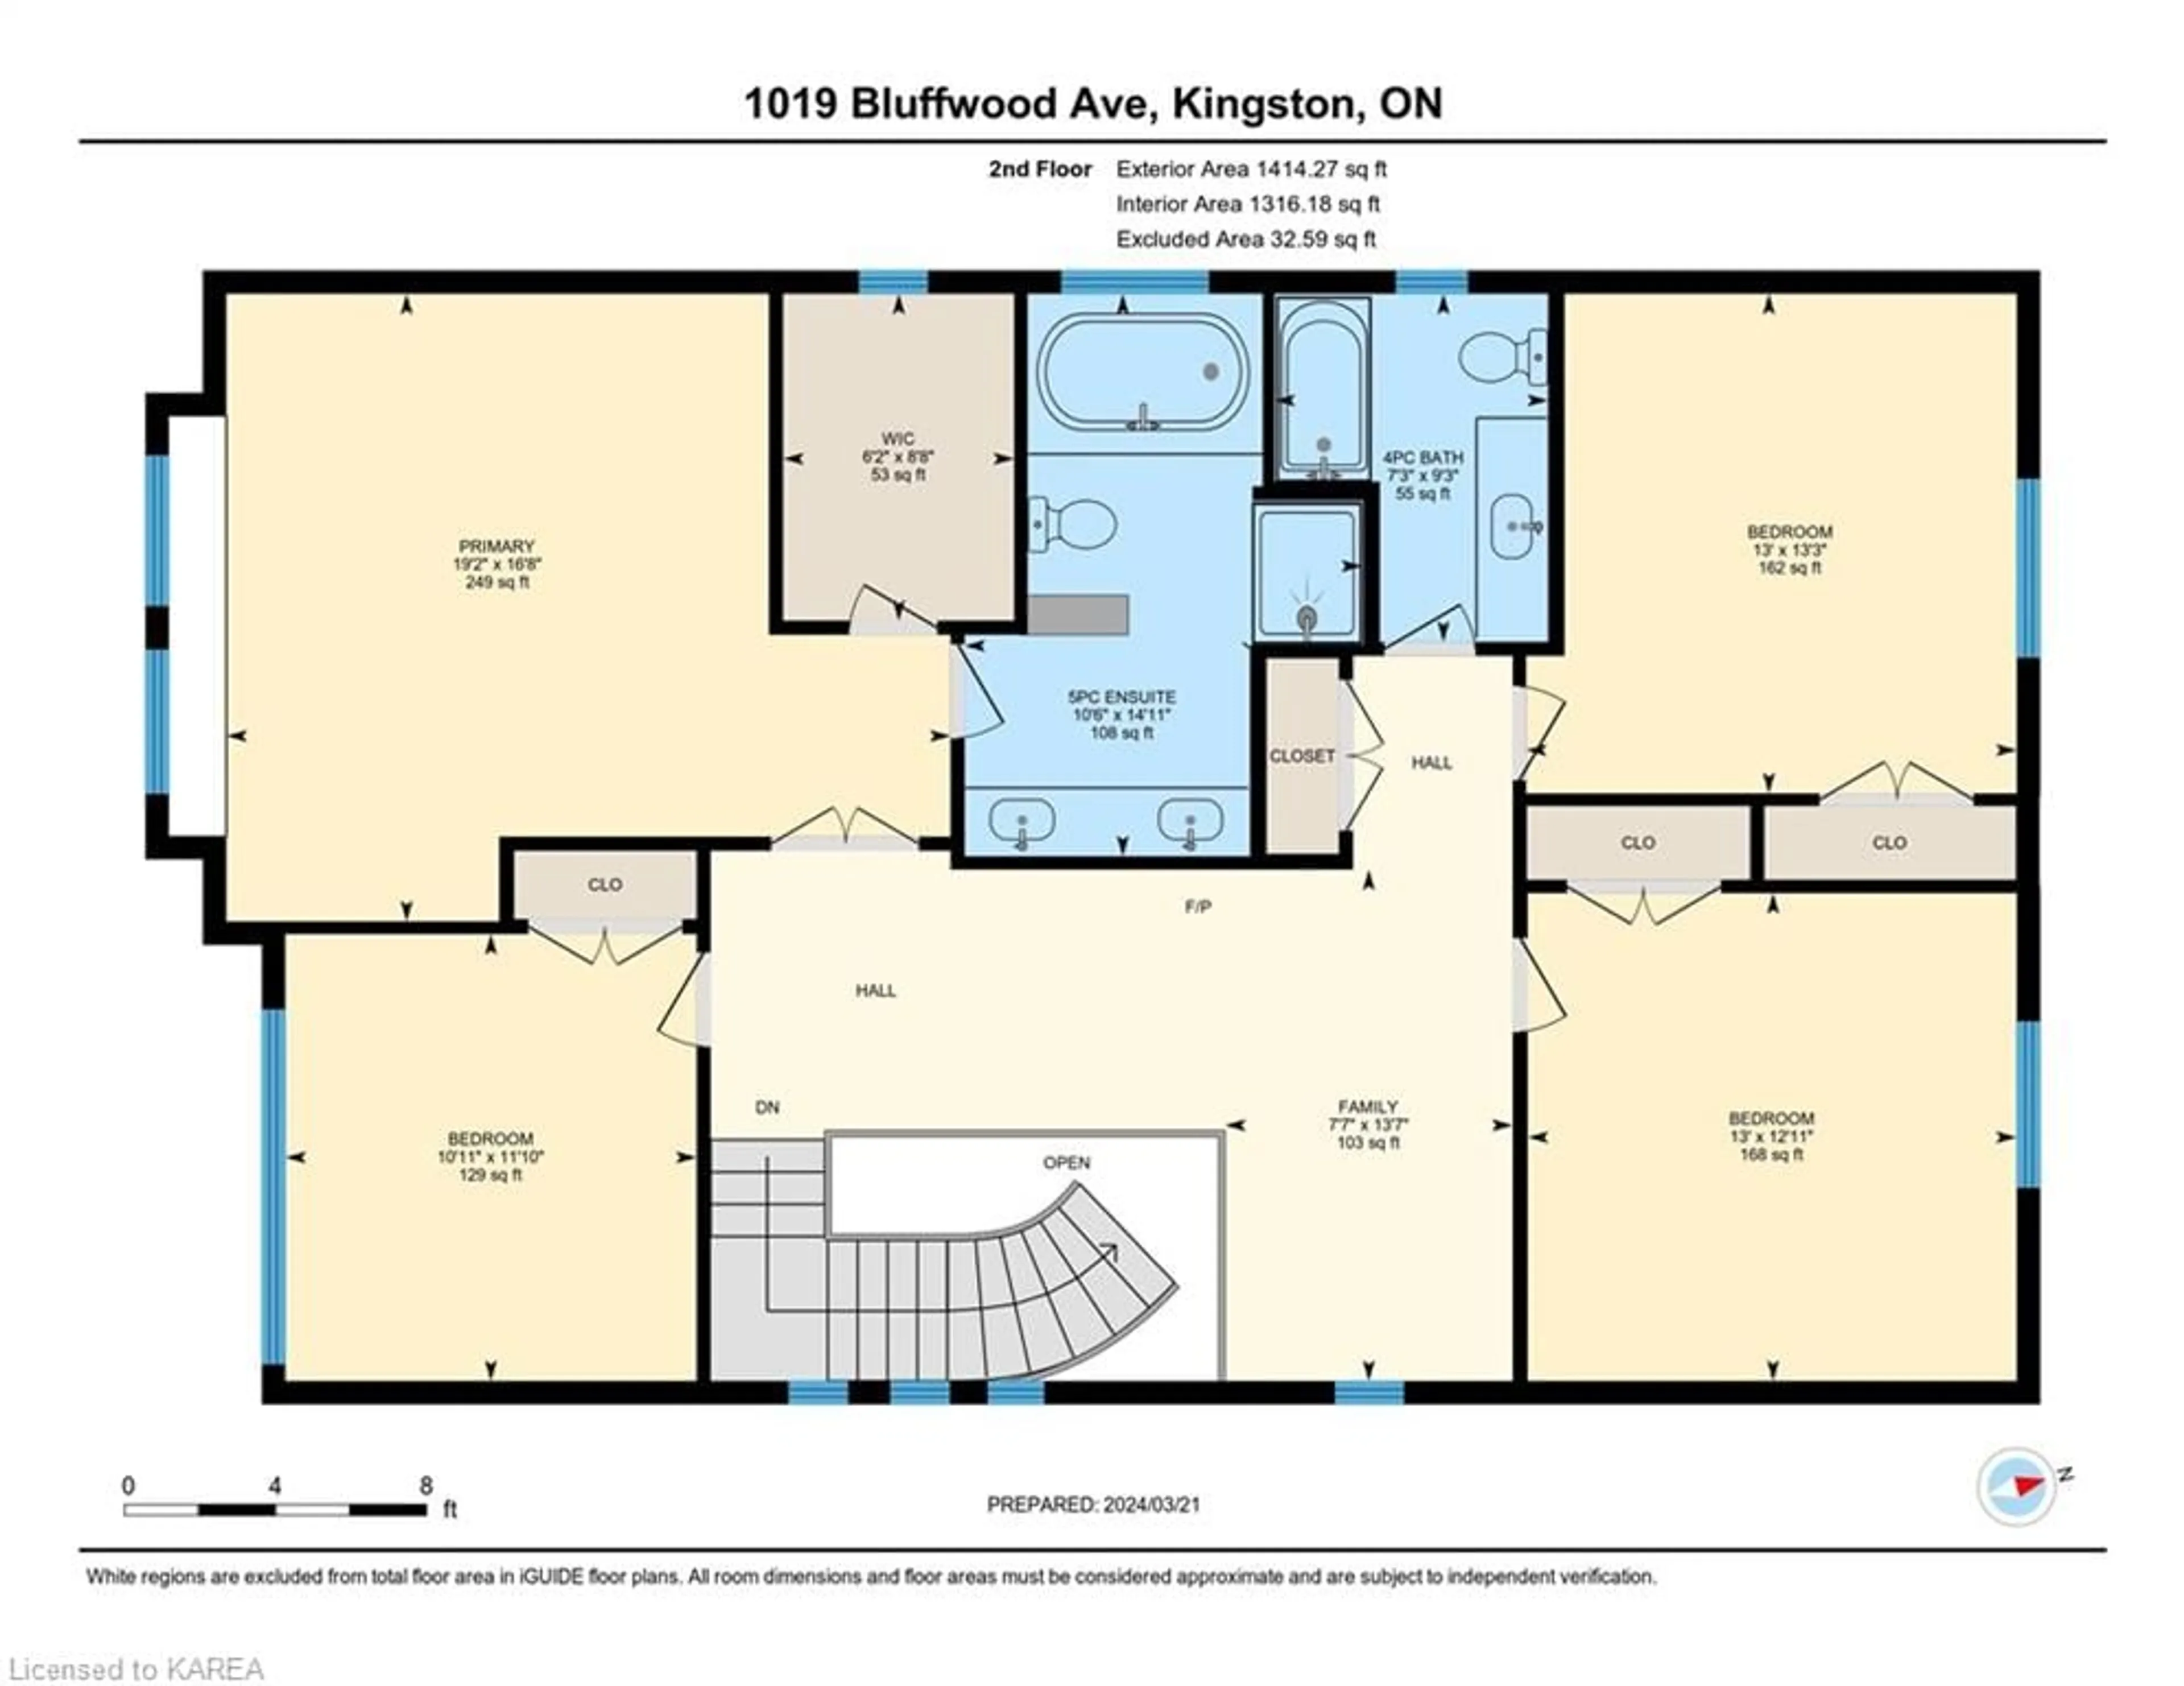 Floor plan for 1019 Bluffwood Ave, Kingston Ontario K7K 7K6